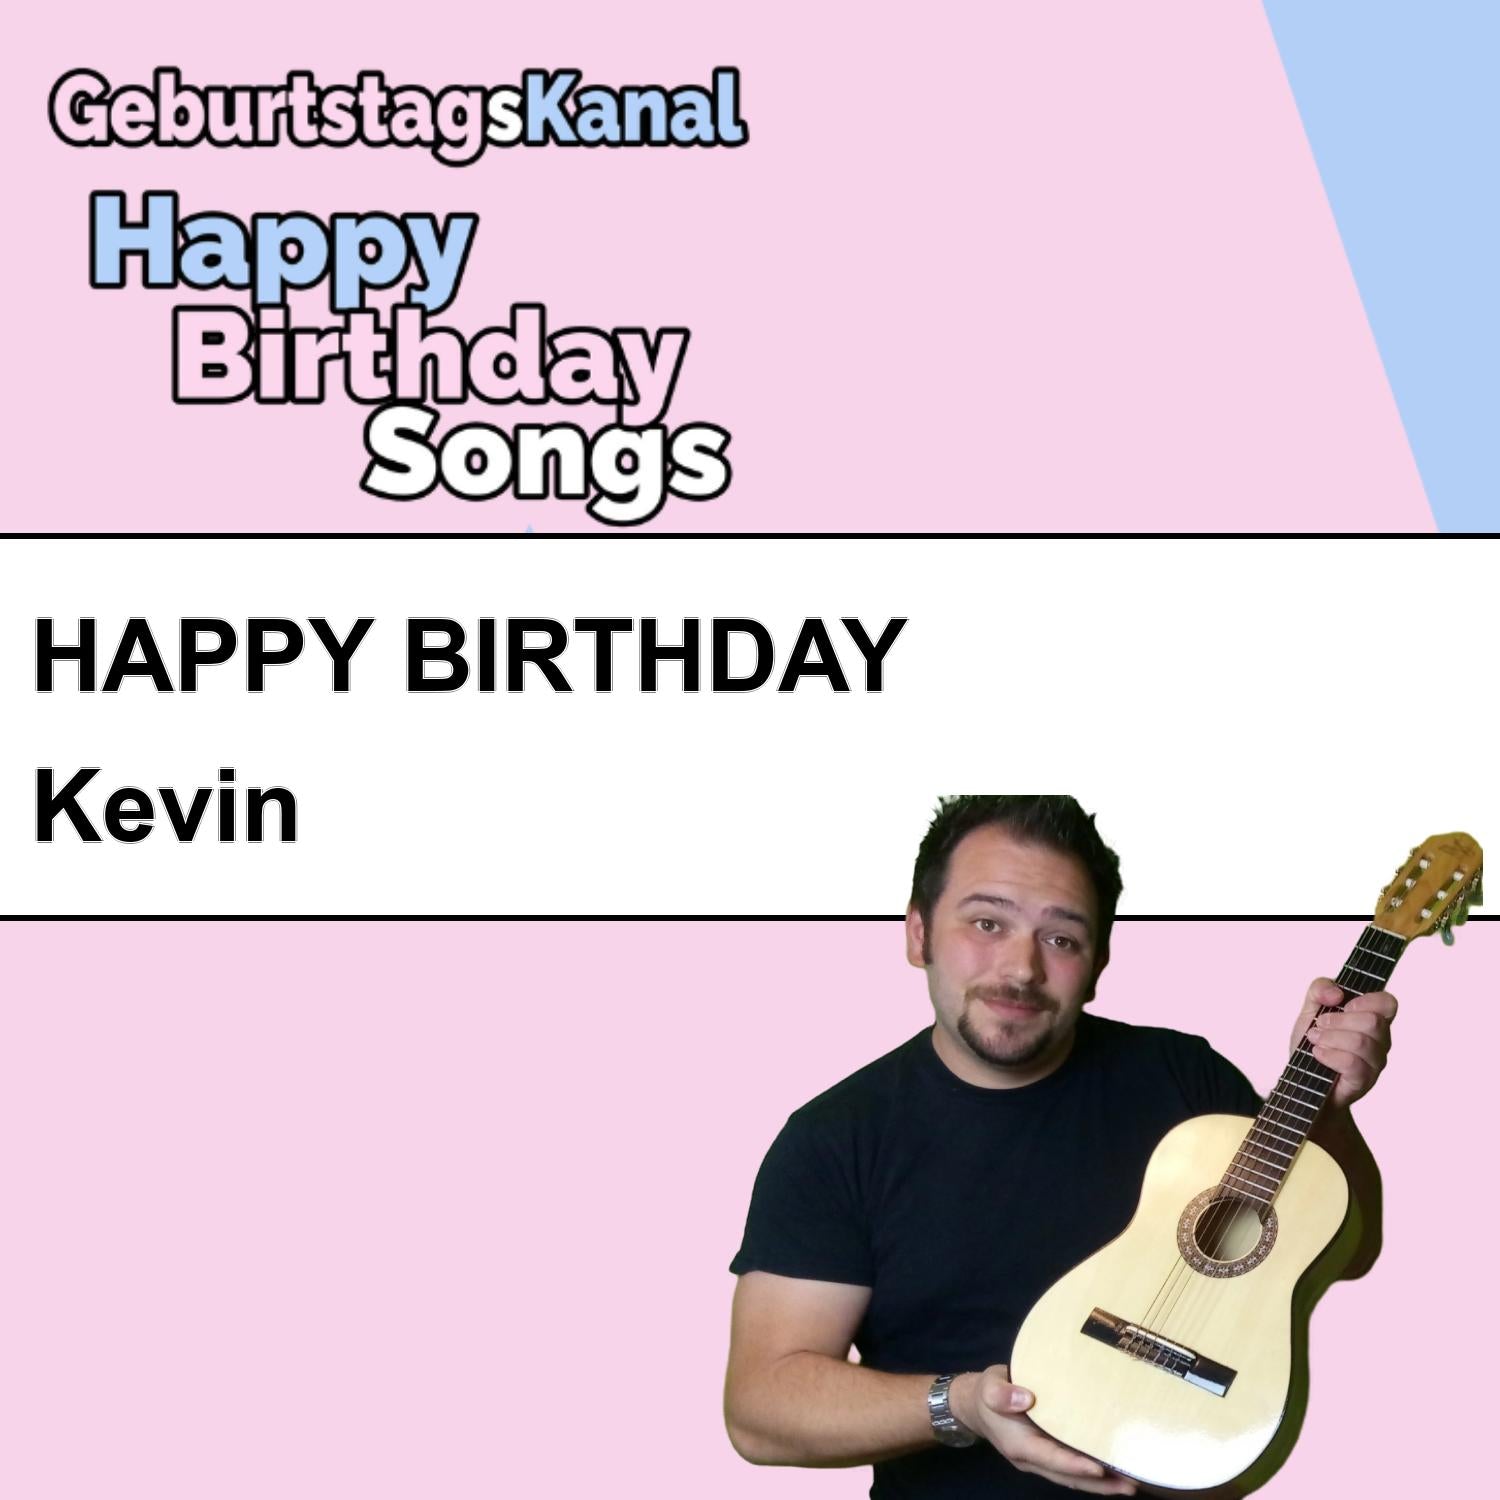 Produktbild Happy Birthday to you Kevin mit Wunschgrußbotschaft